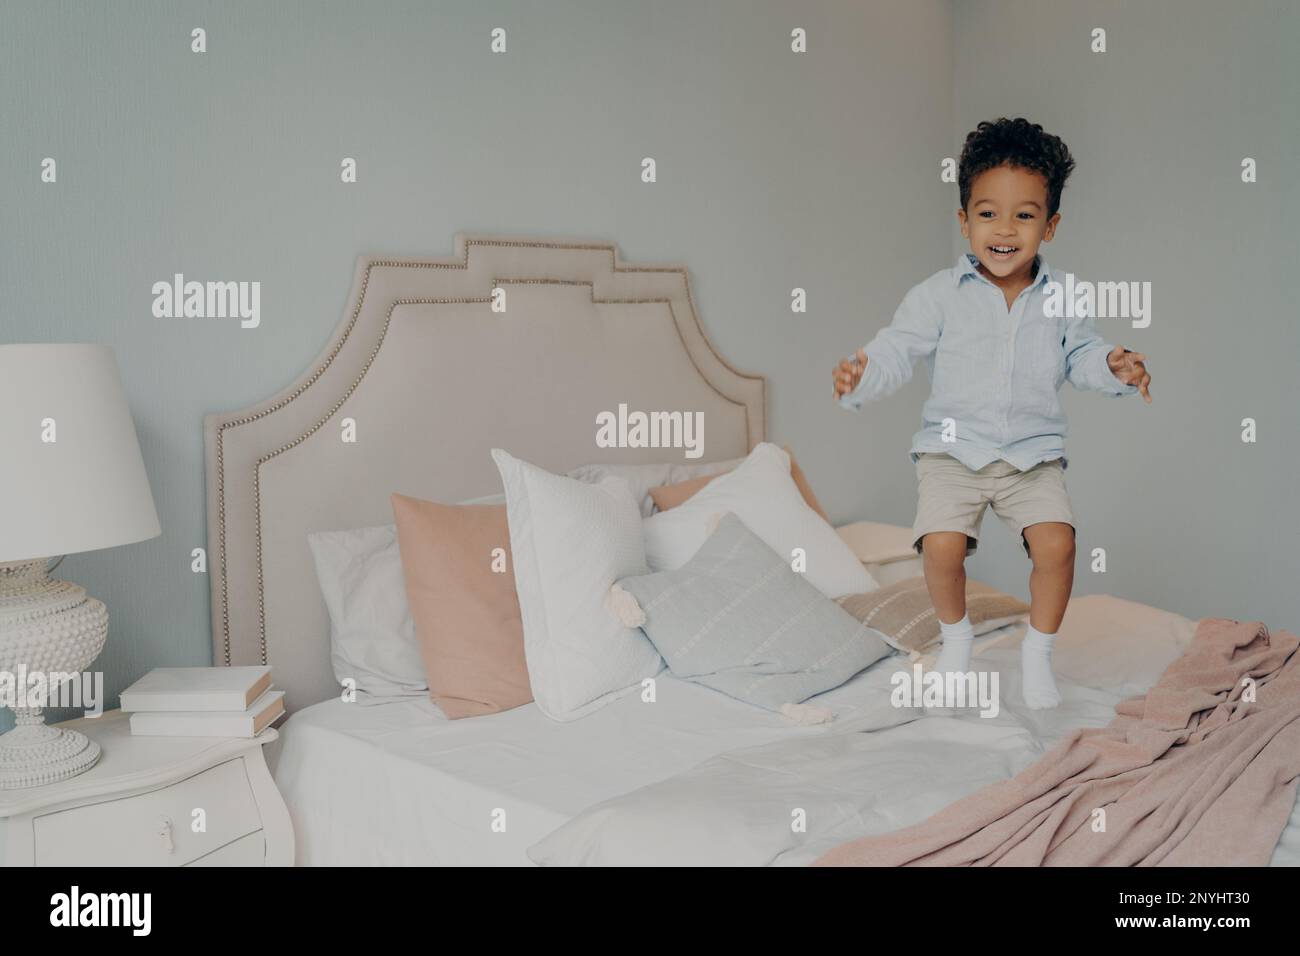 Ein Junge aus verschiedenen ethnischen Gruppen in lässiger Kleidung, der Spaß hat und auf ein großes Bett springt, mit weißen und pinkfarbenen Bettwäsche und Kopfkissen. In der Luft fotografiert Stockfoto